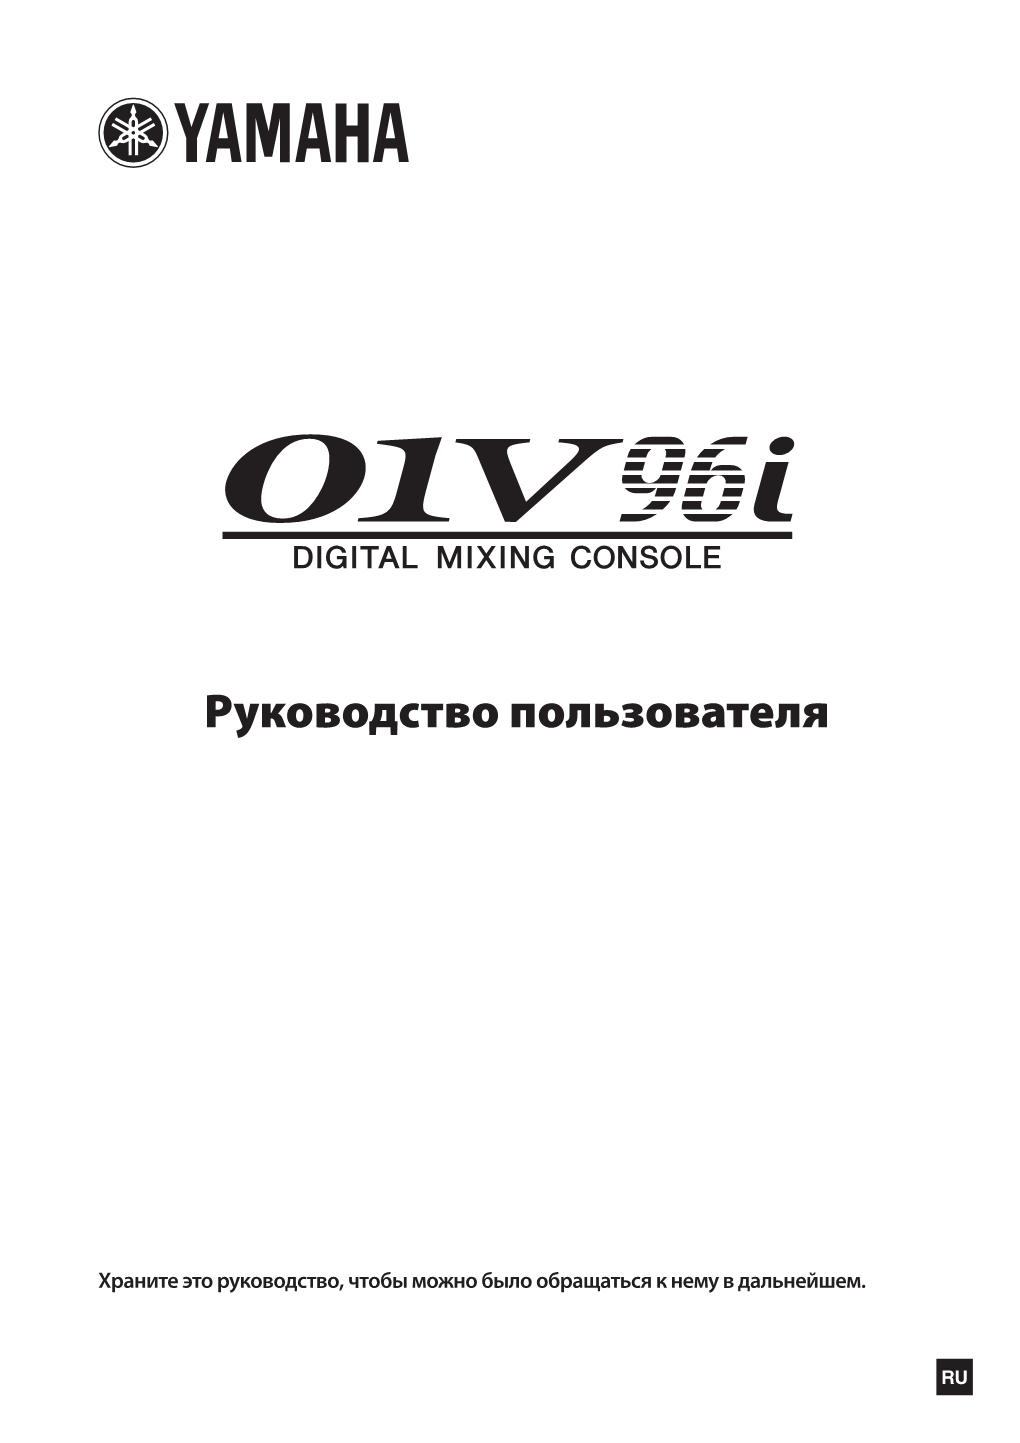 01V96i Owner's Manual